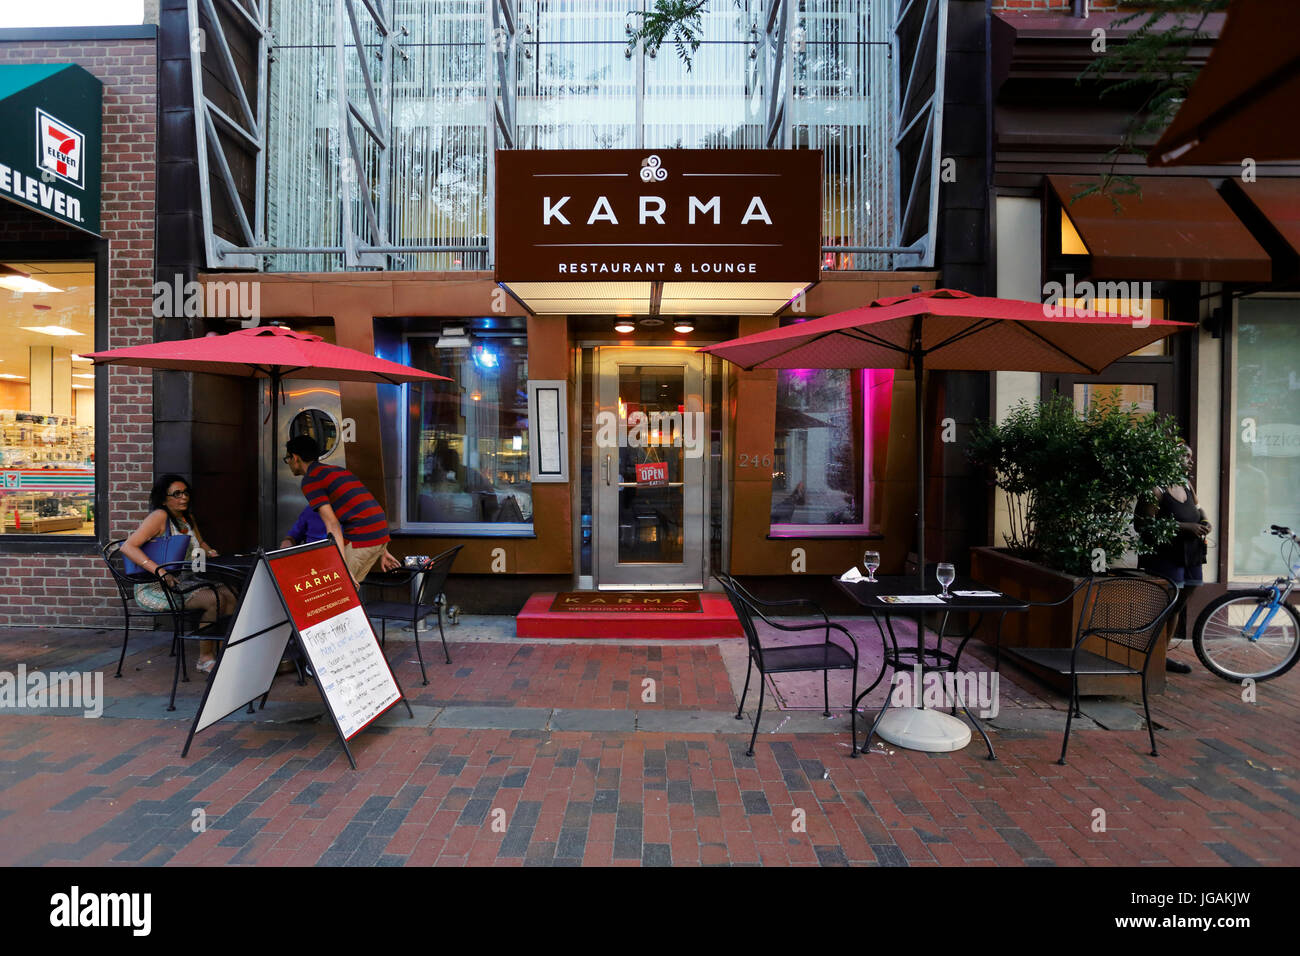 Restaurant Karma, 246 Market St, Philadelphie, Pennsylvanie. Façade extérieure d'un restaurant indien dans le centre-ville. Banque D'Images